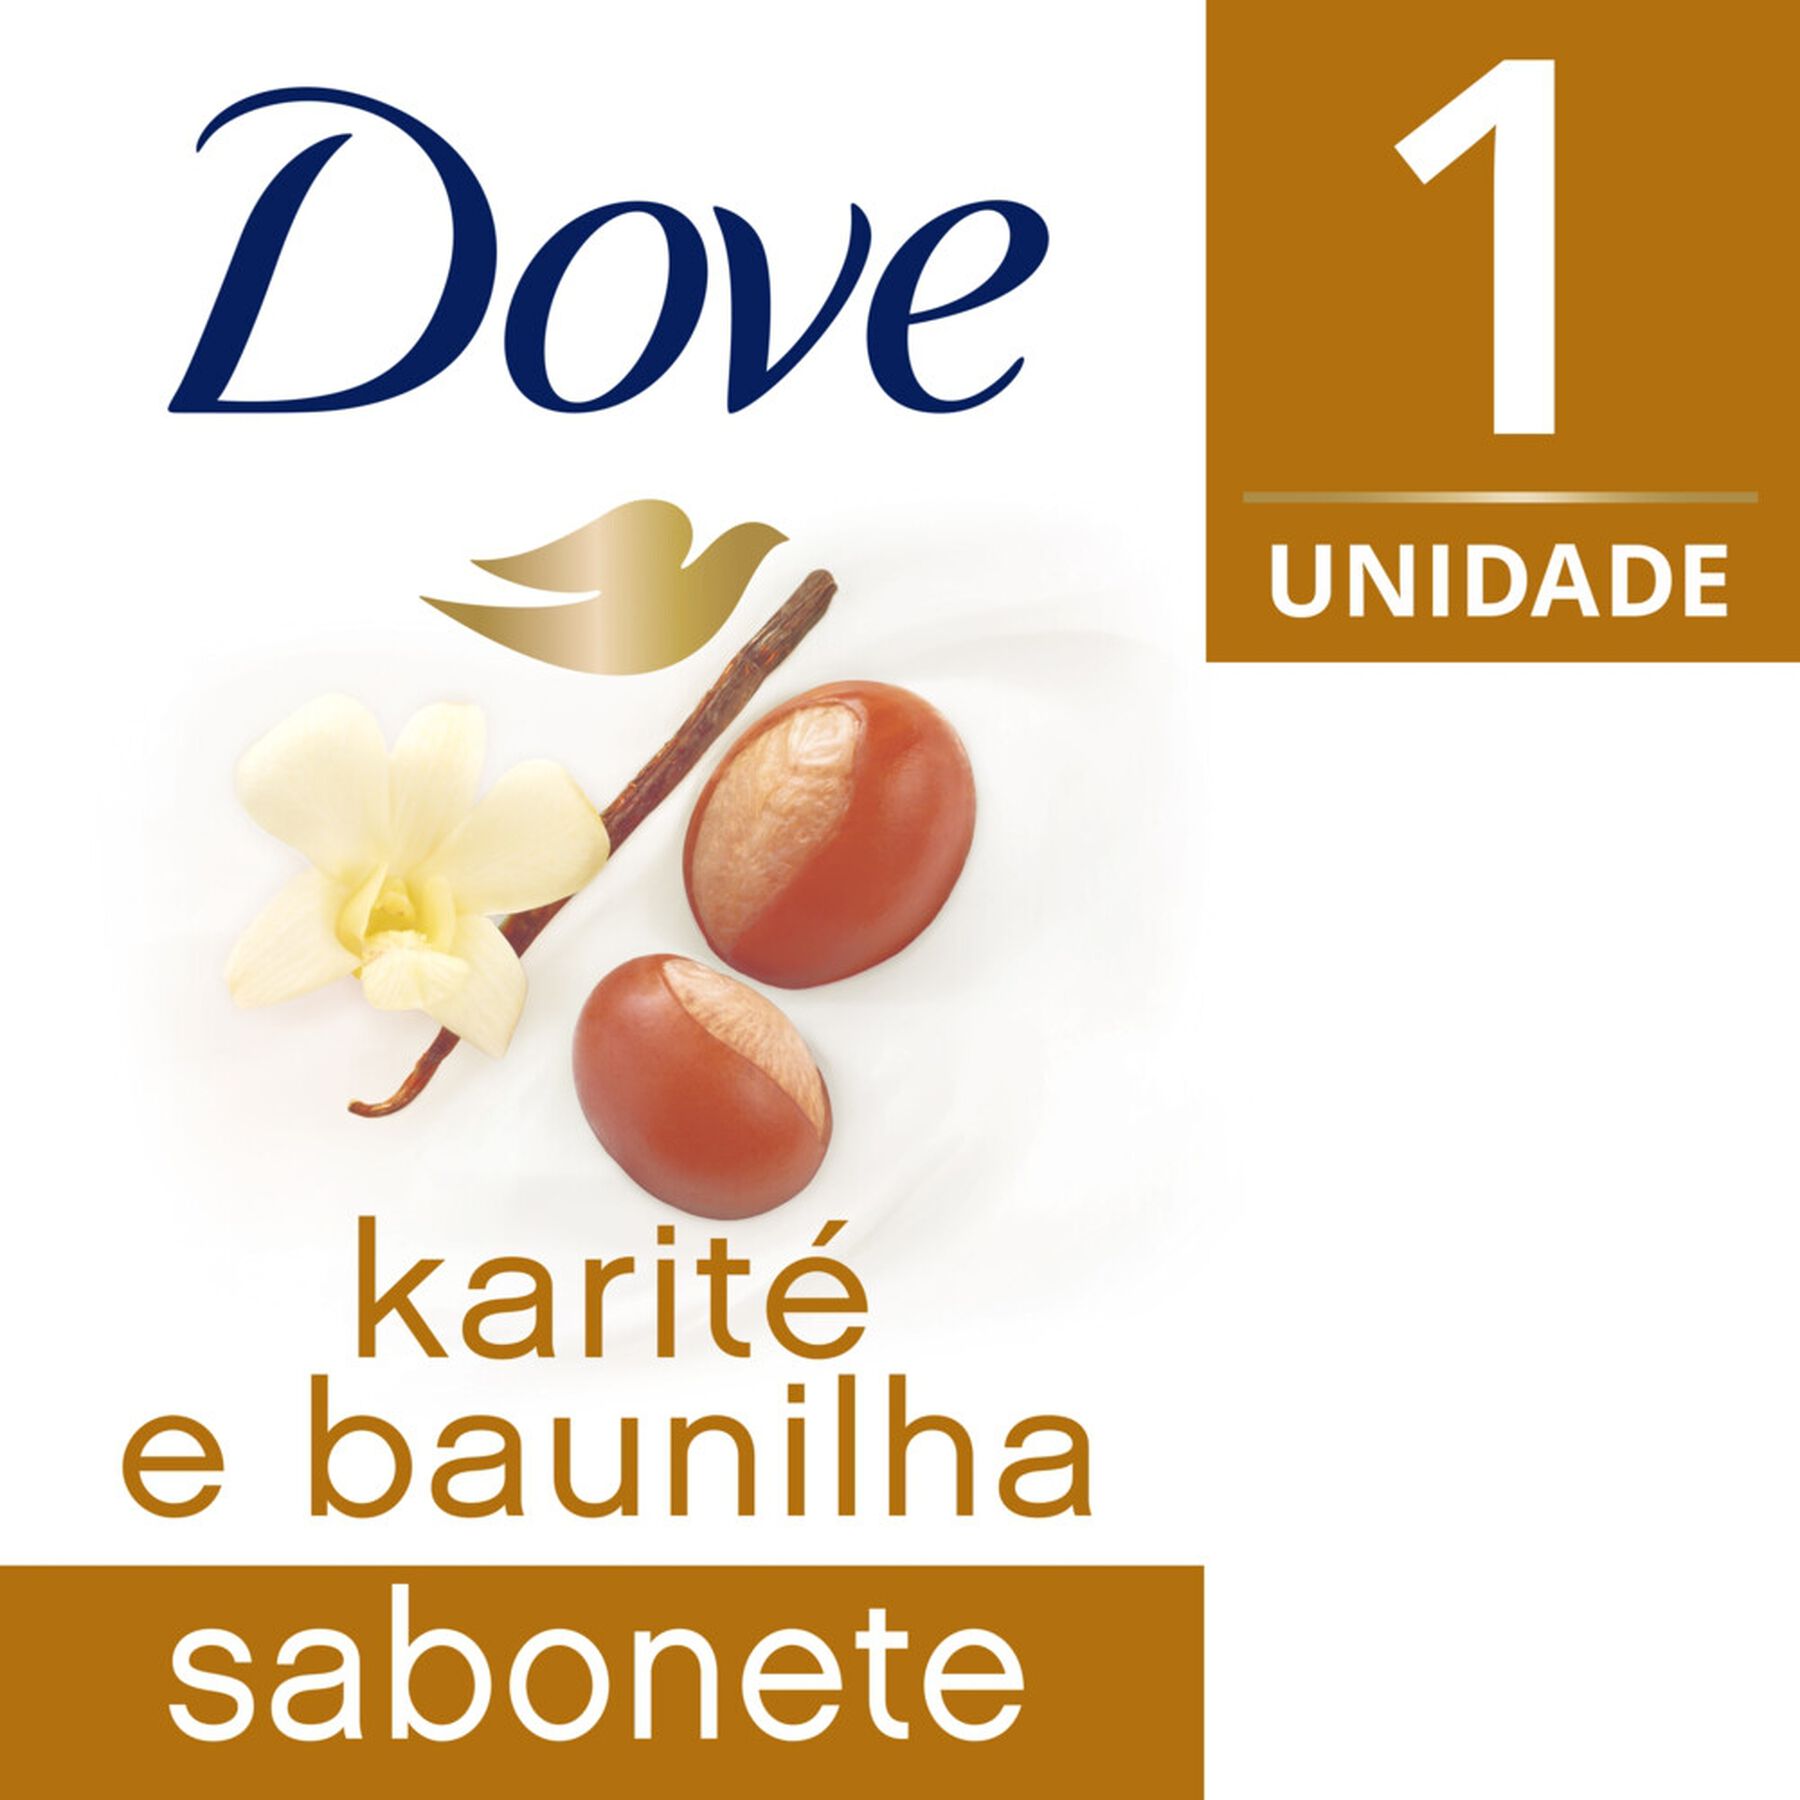 Sabonete em Barra Óleo de Karité e Baunilha Dove Delicious Care Caixa 90g